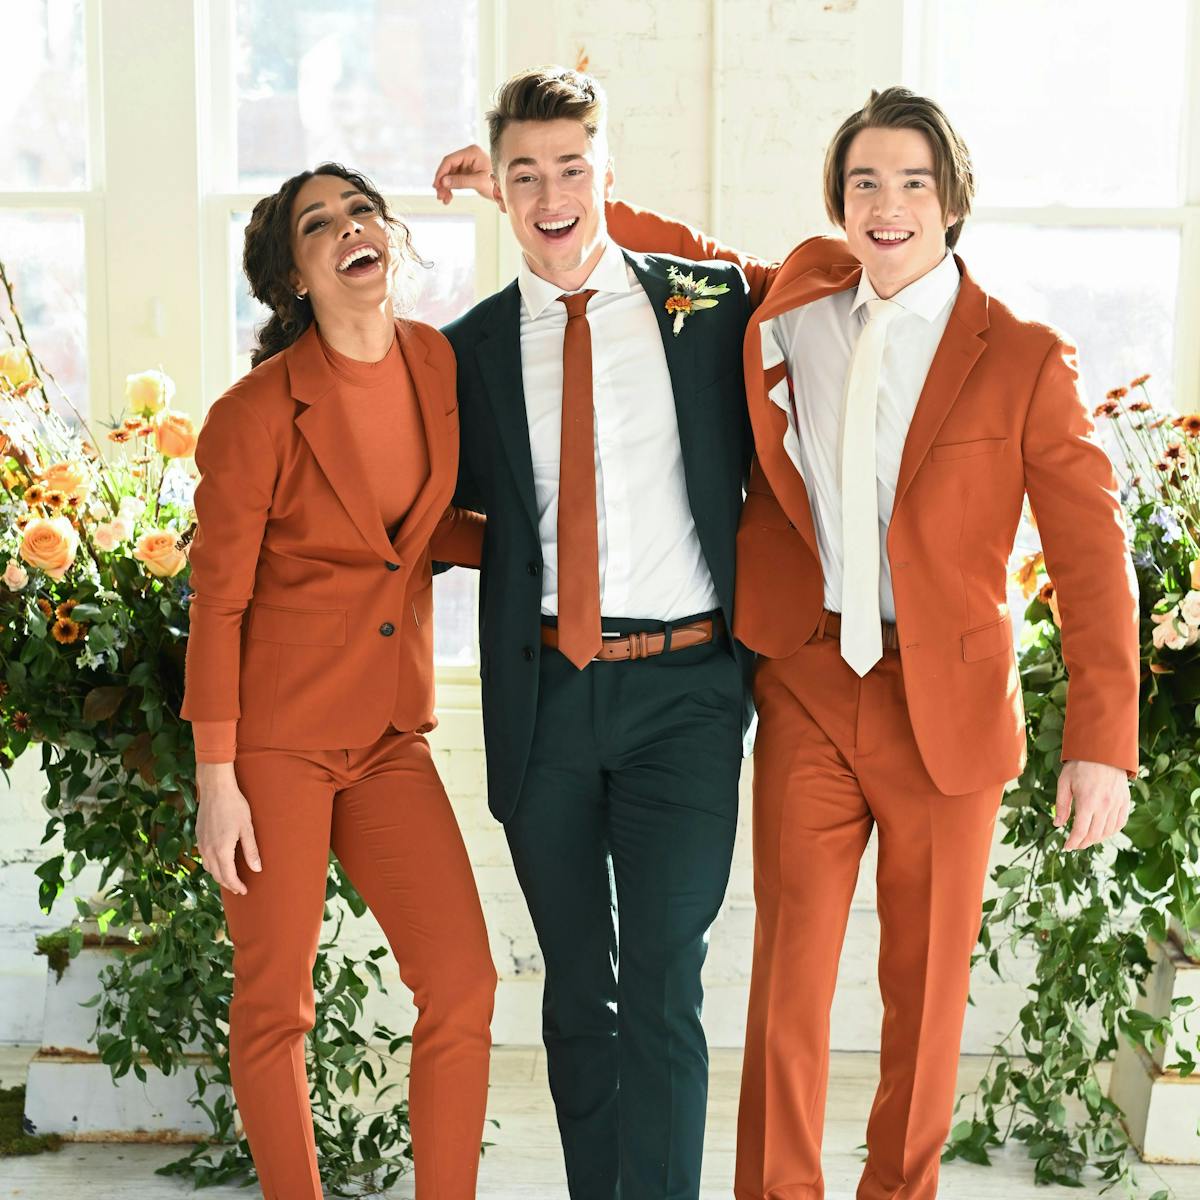 burnt orange wedding suits for men and women